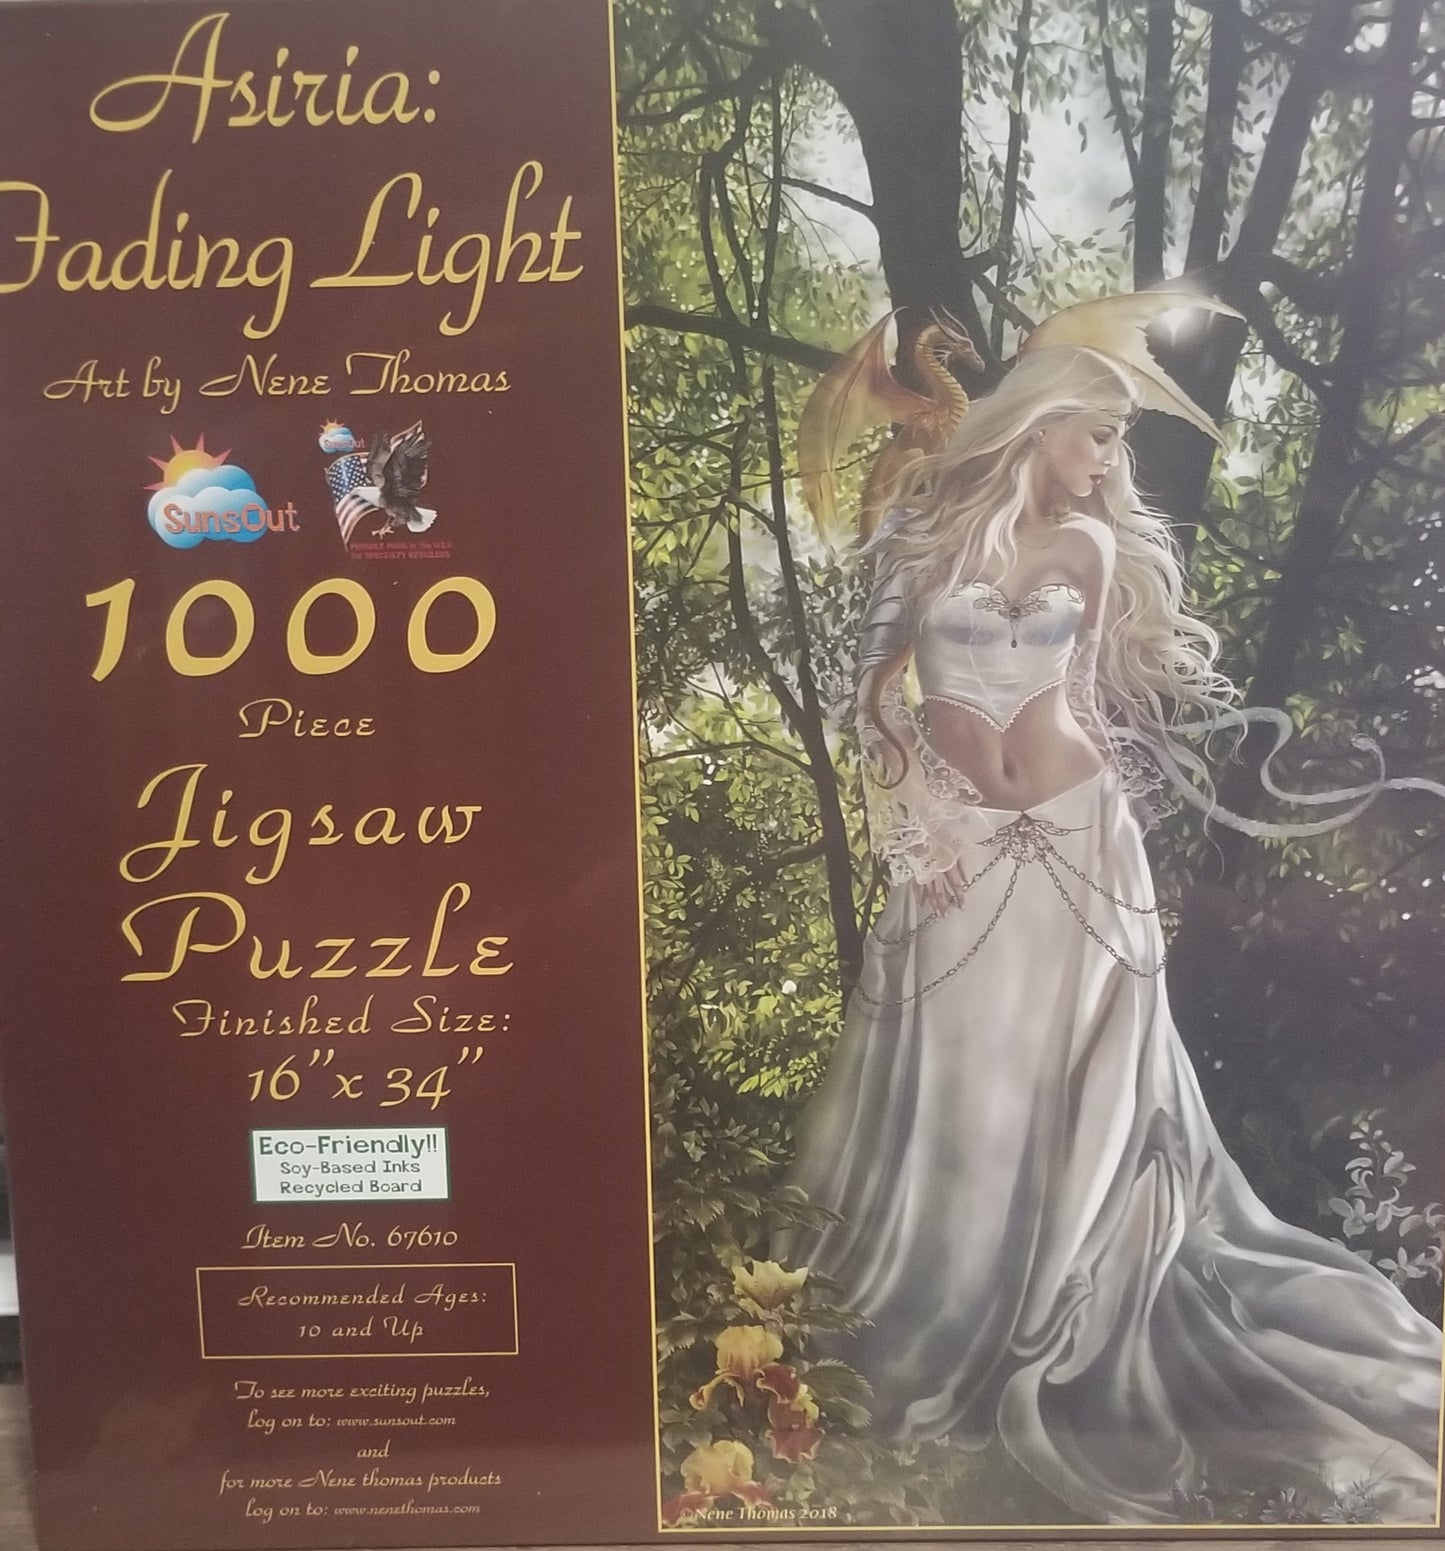 Asiria: Fading Light van Nene Thomas, puzzel van 1000 stukjes